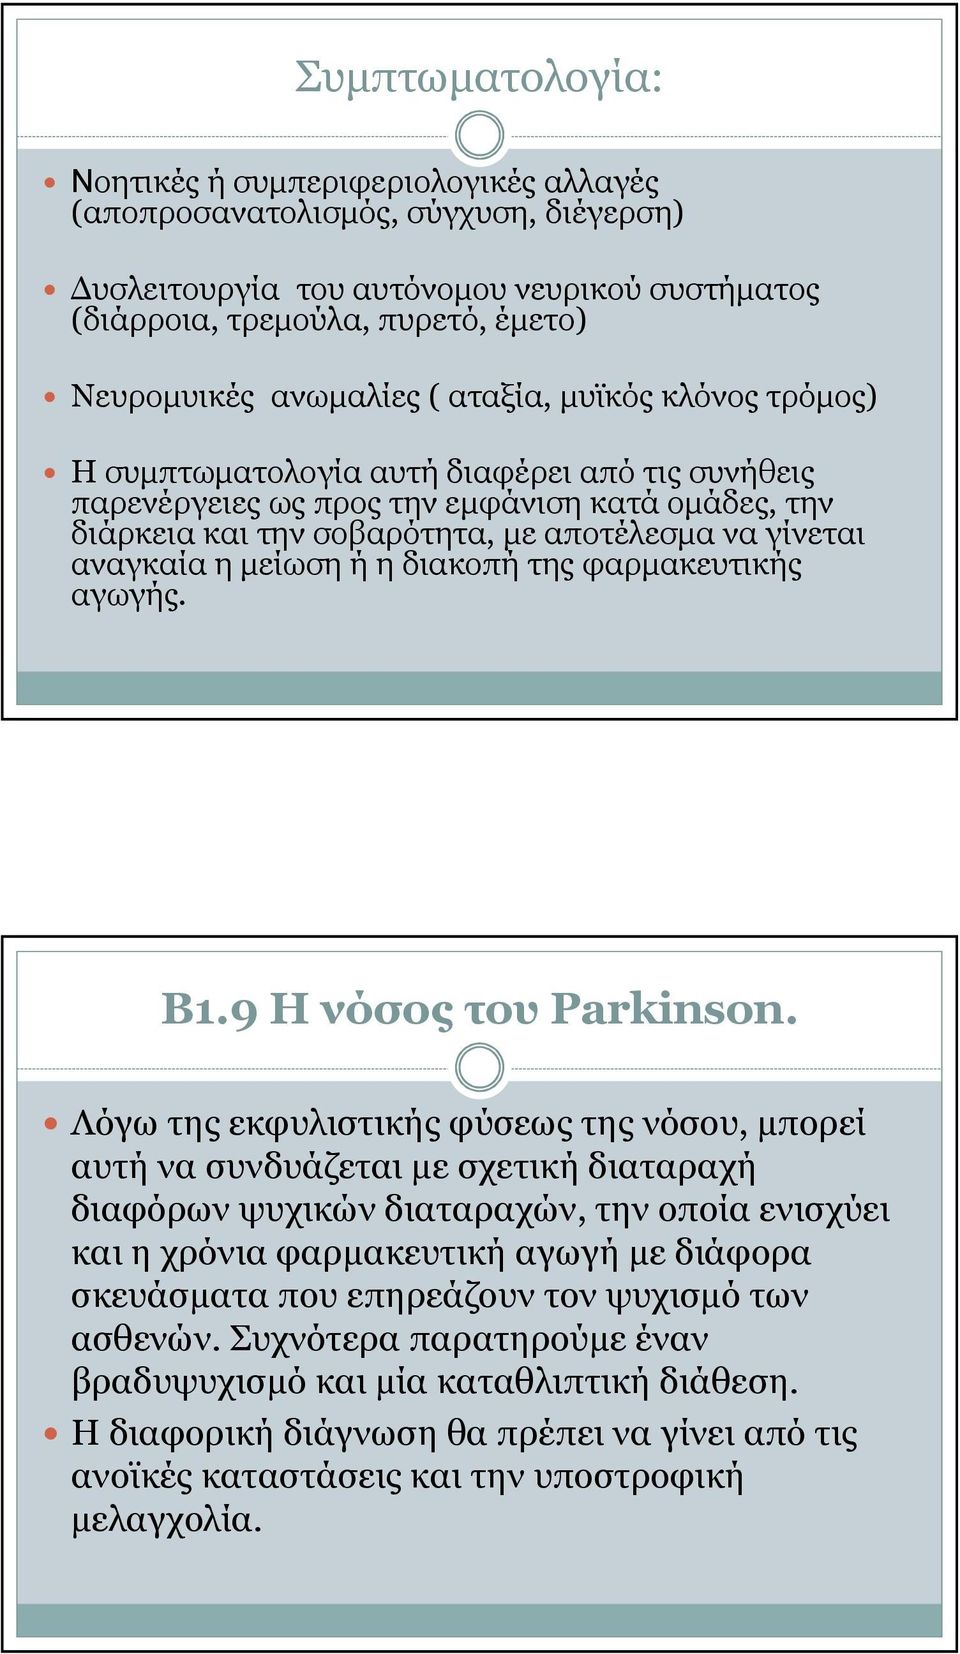 αναγκαία η µείωση ή η διακοπή της φαρµακευτικής αγωγής. Β1.9 Η νόσος του Parkinson.